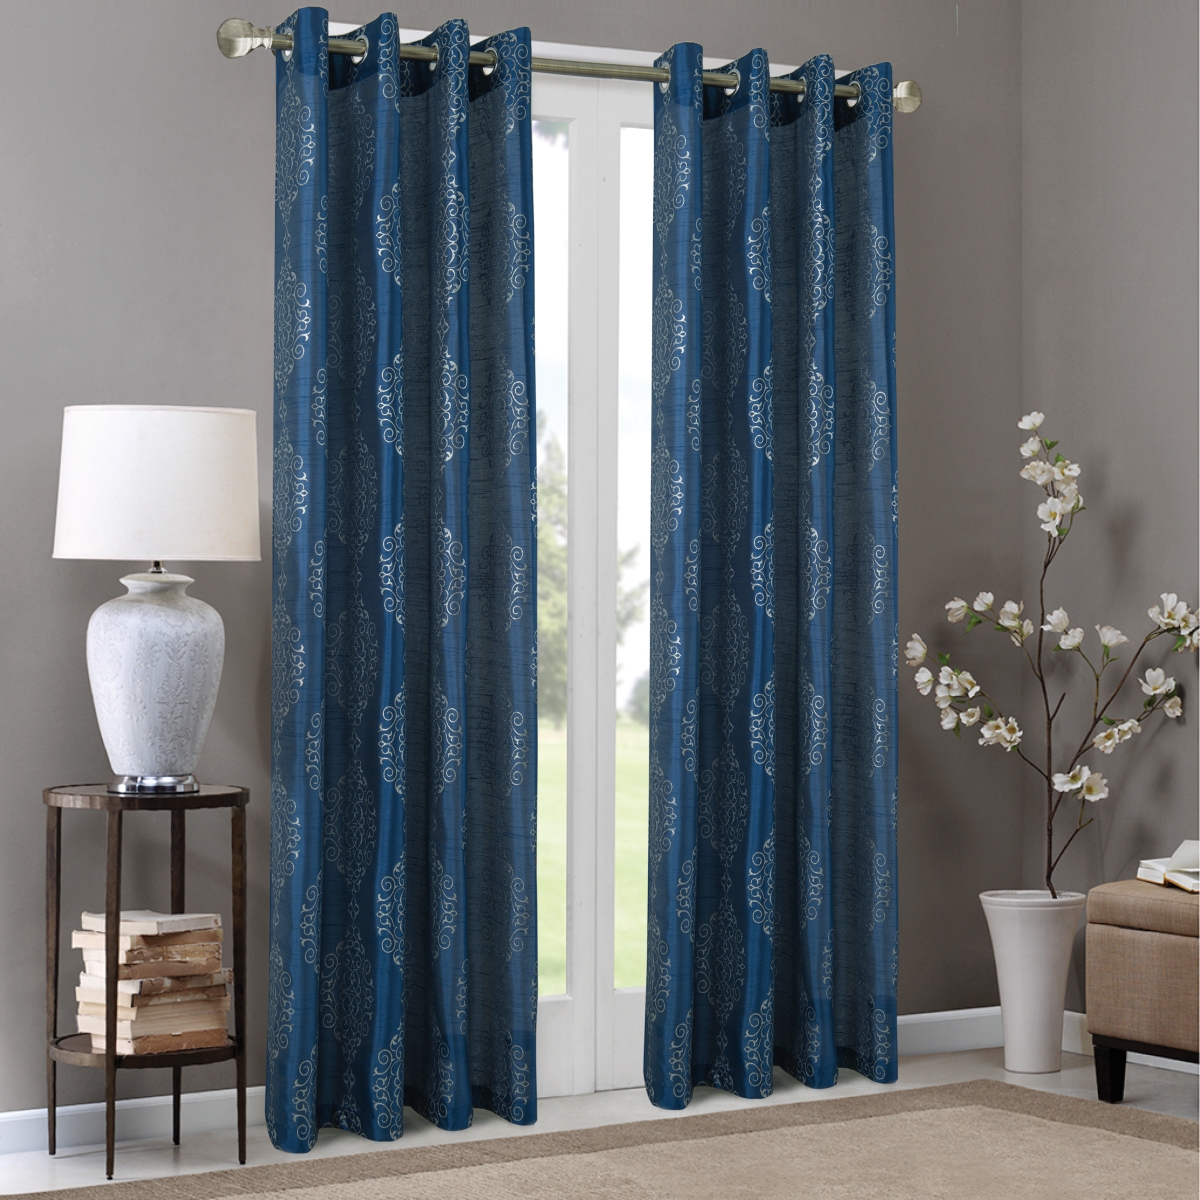 Pnr22208 54 X 84 In. Riverside Metallic Damask Faux Silk Grommet Single Curtain Panel, Blue